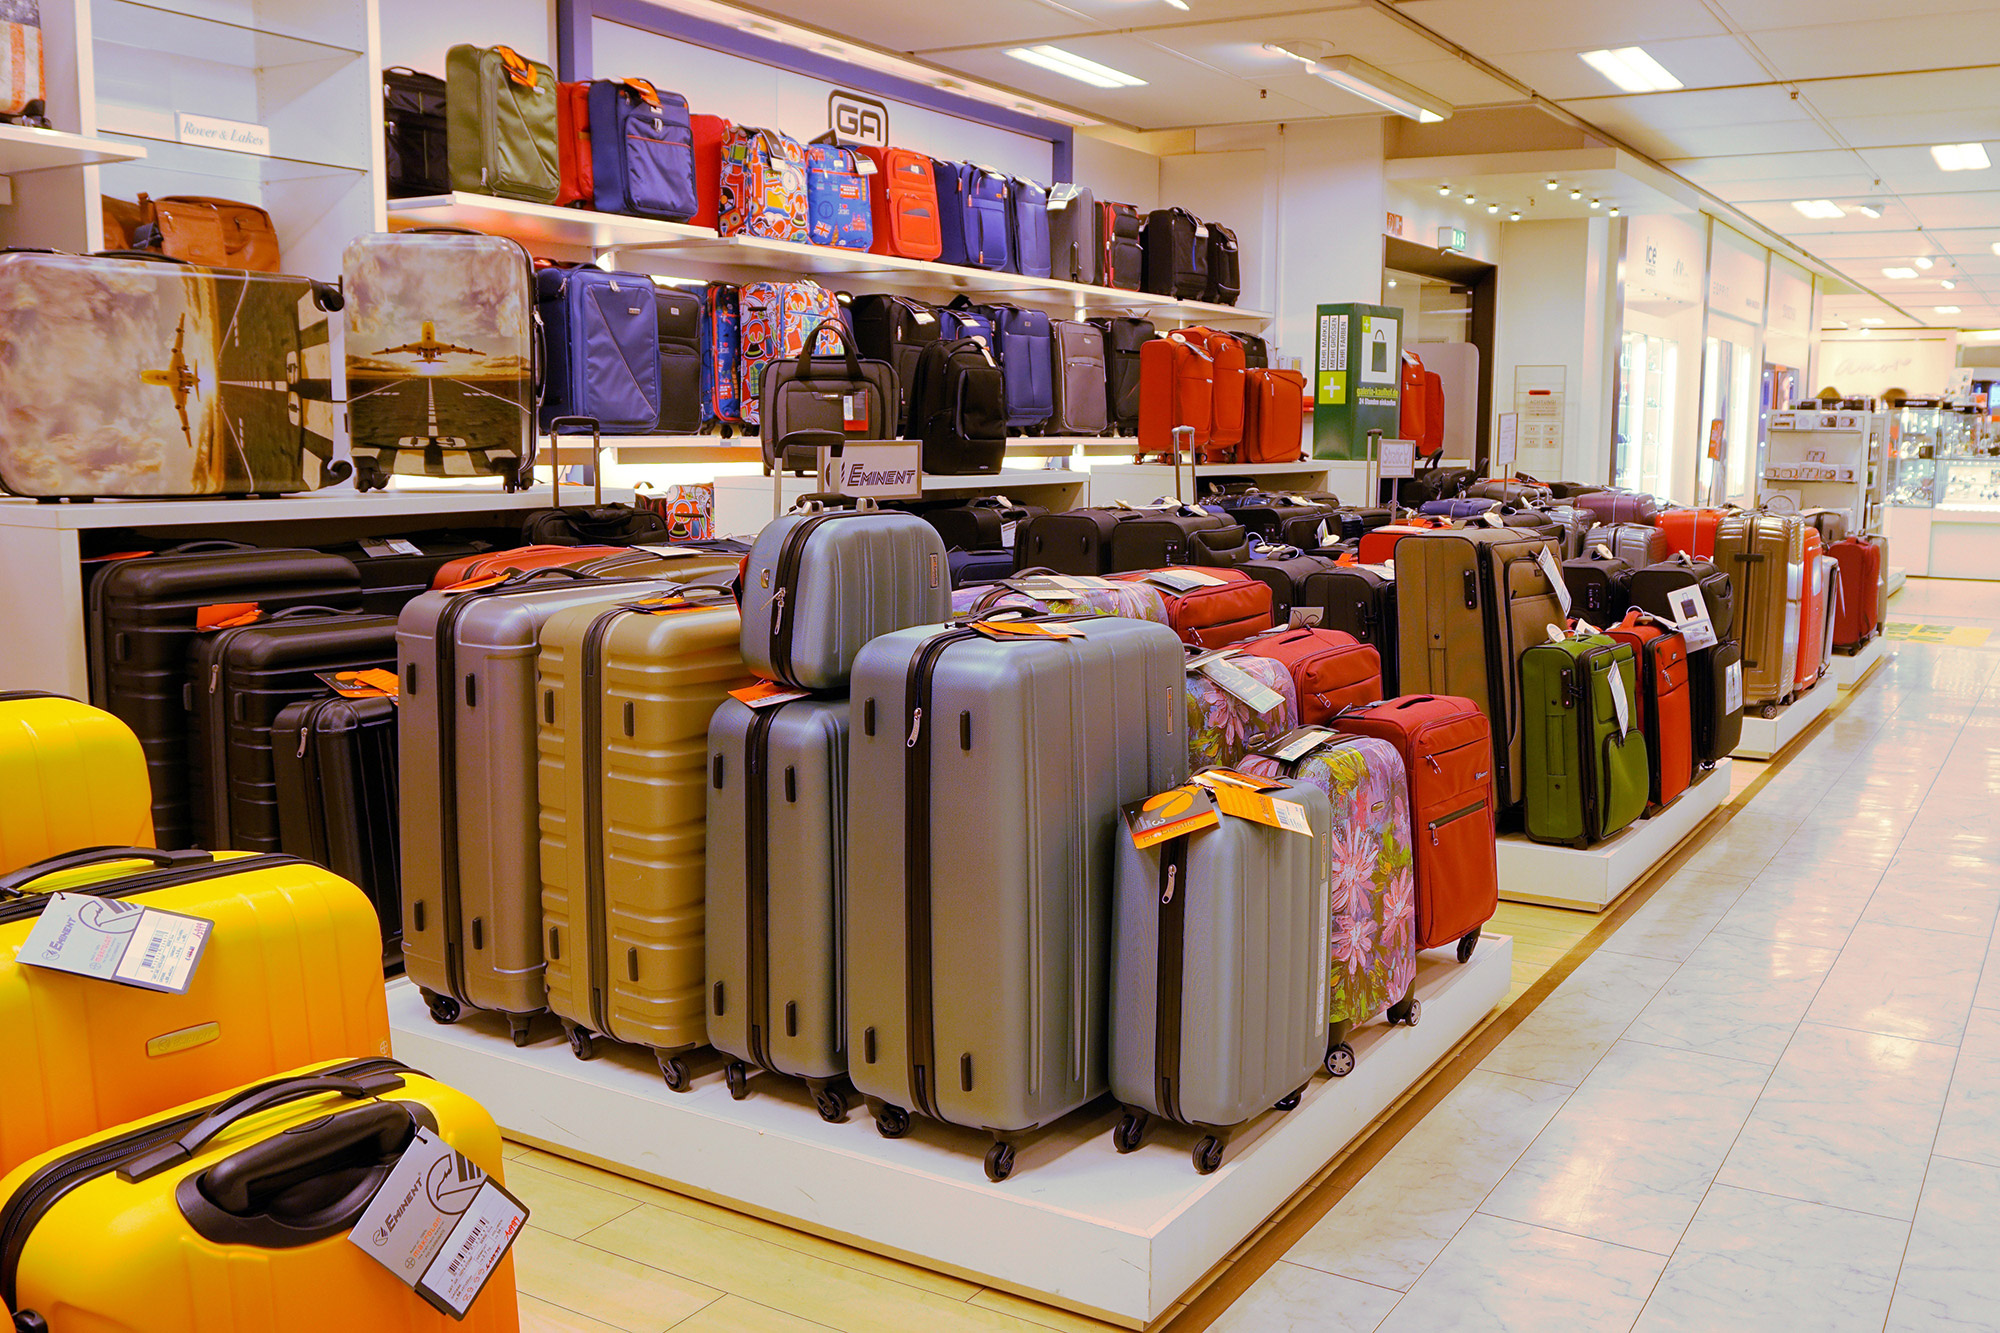 niezen meerderheid toegang Slim omgaan met bagage op reis - Reizen & Reistips